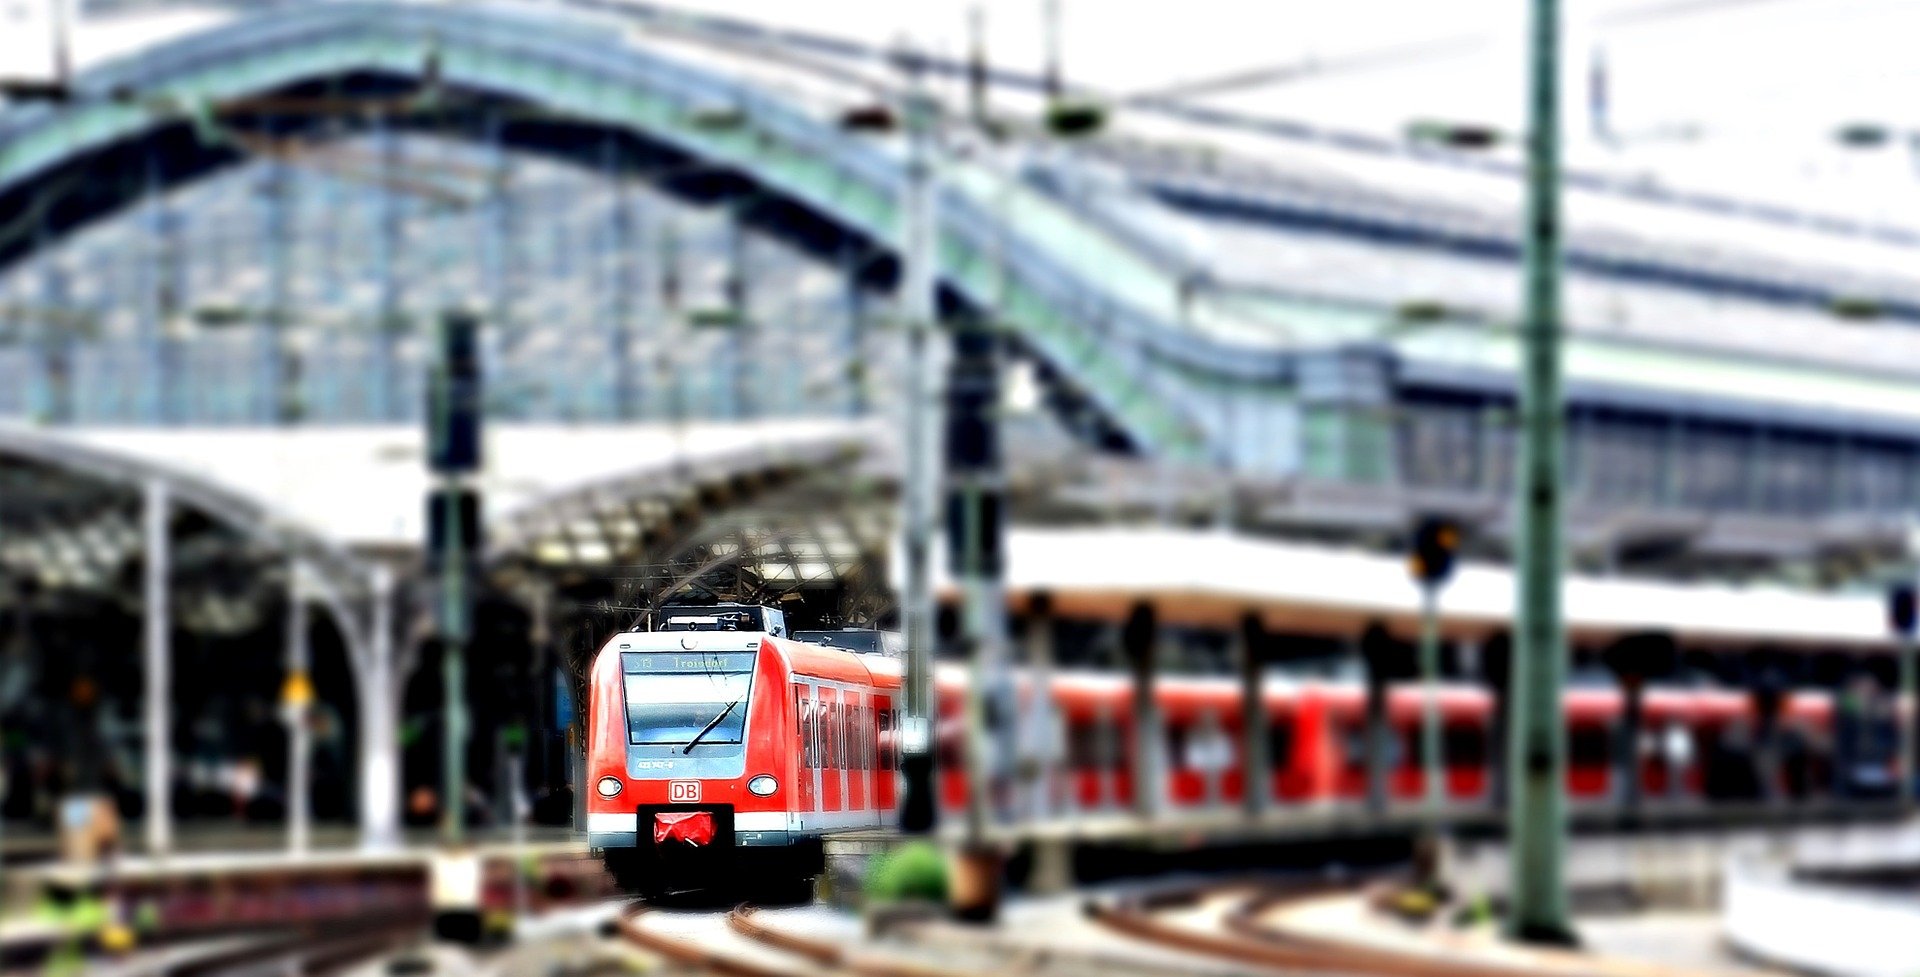 Возвращение домой. Центральный вокзал/Фото Pixel 2013|Pixabay